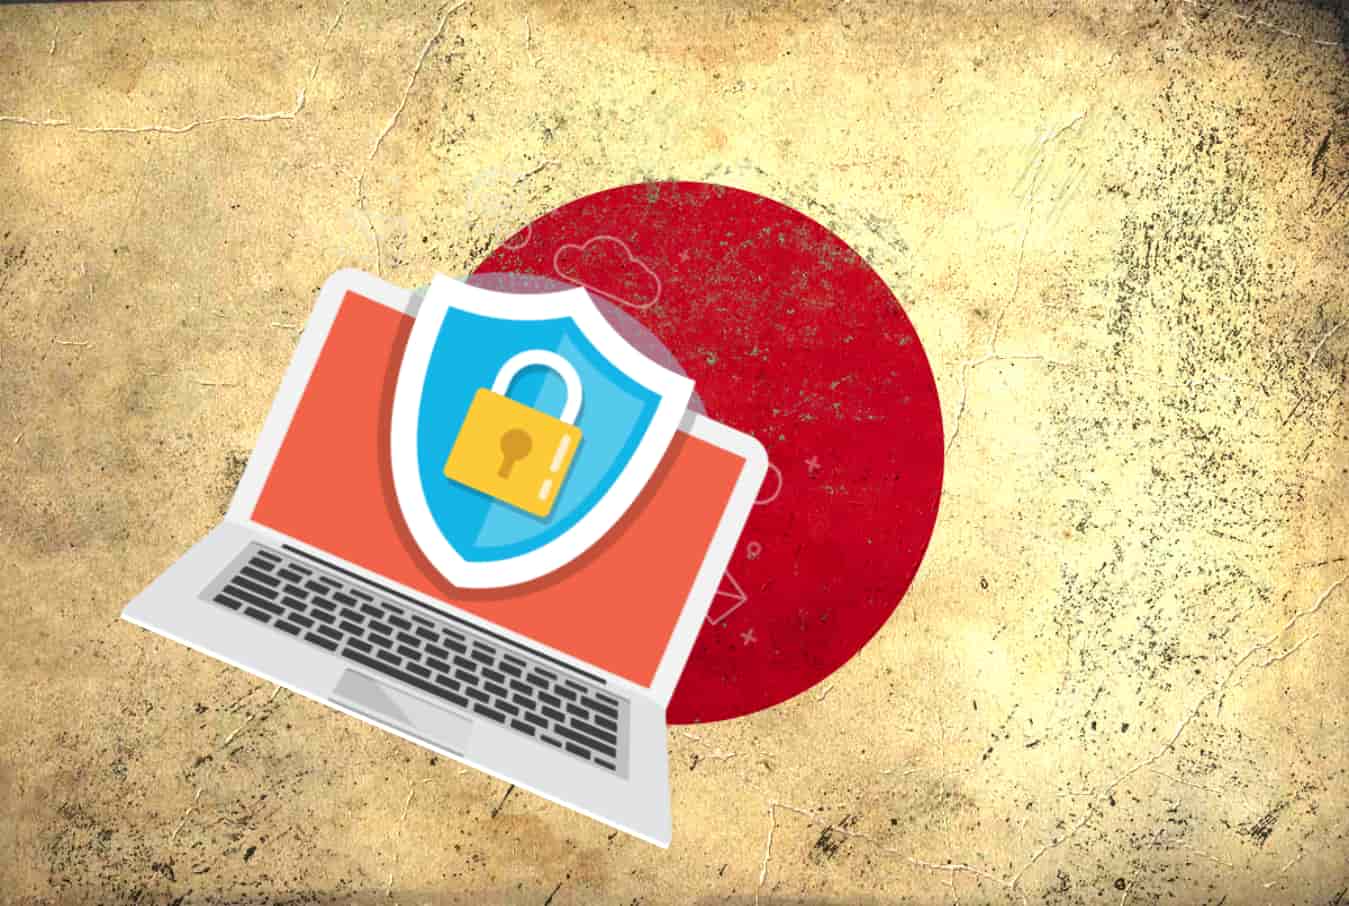 Getting a VPN in Japan